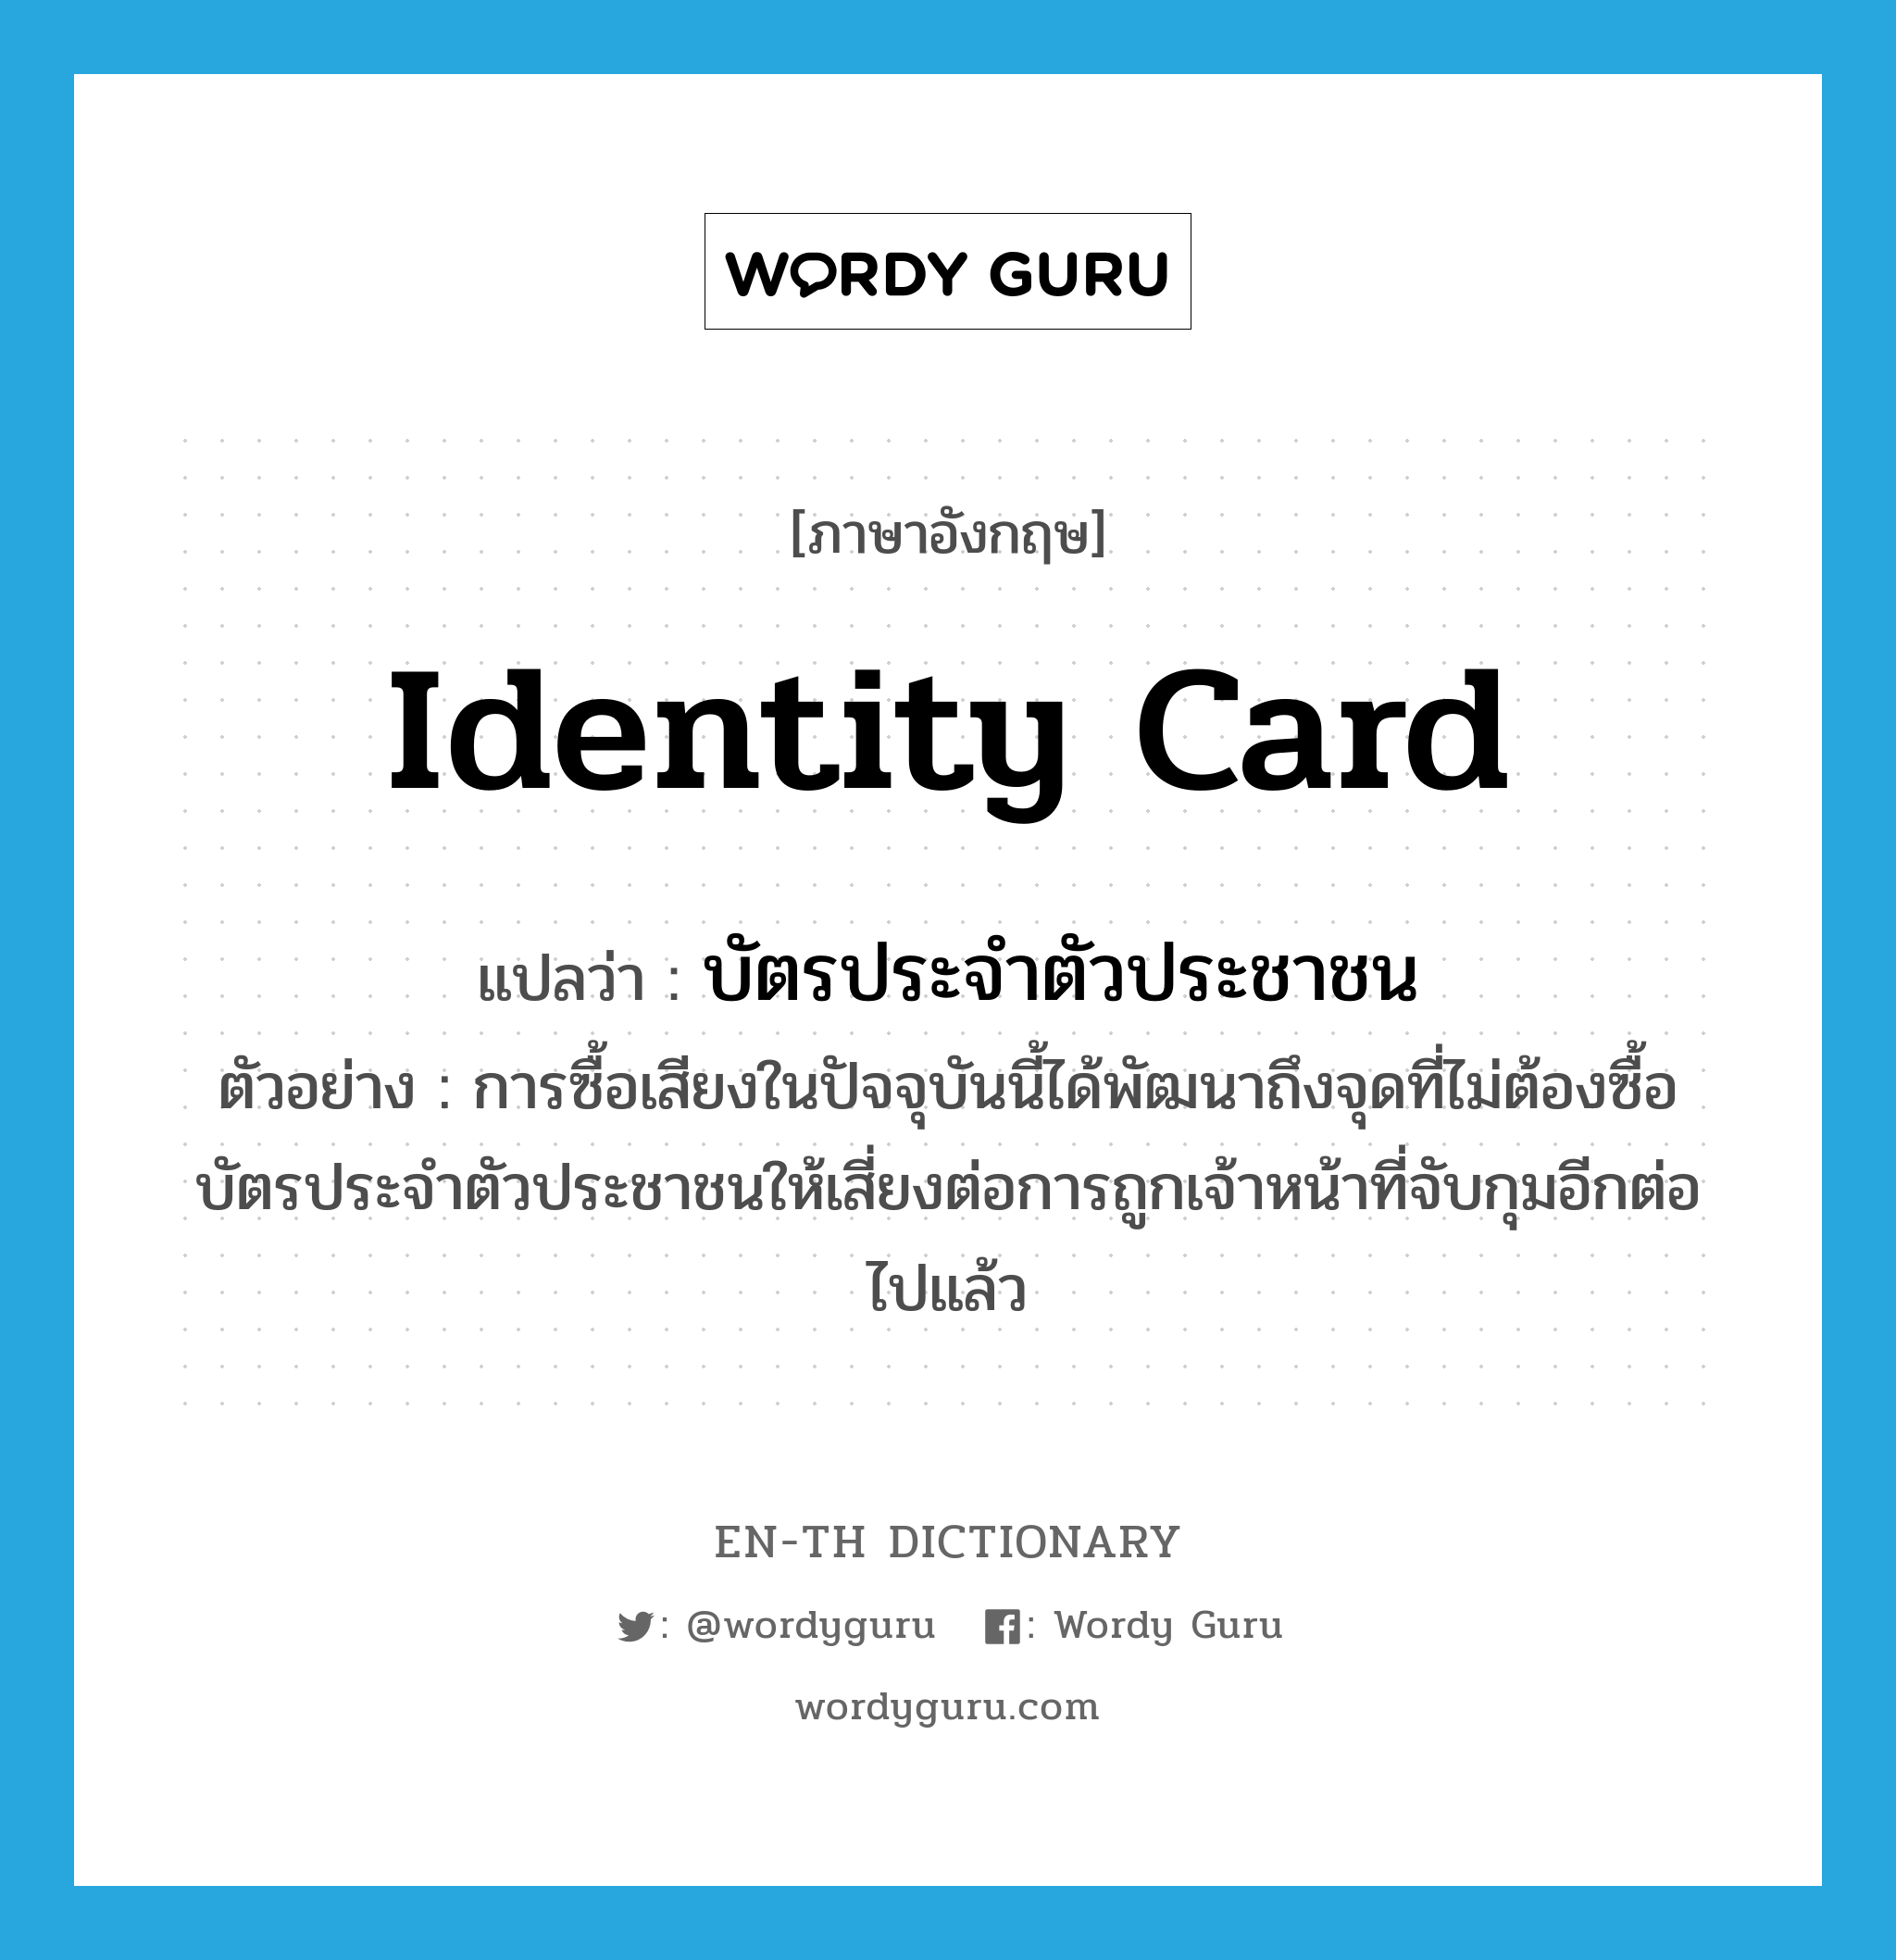 บัตรประจำตัวประชาชน ภาษาอังกฤษ?, คำศัพท์ภาษาอังกฤษ บัตรประจำตัวประชาชน แปลว่า identity card ประเภท N ตัวอย่าง การซื้อเสียงในปัจจุบันนี้ได้พัฒนาถึงจุดที่ไม่ต้องซื้อบัตรประจำตัวประชาชนให้เสี่ยงต่อการถูกเจ้าหน้าที่จับกุมอีกต่อไปแล้ว หมวด N